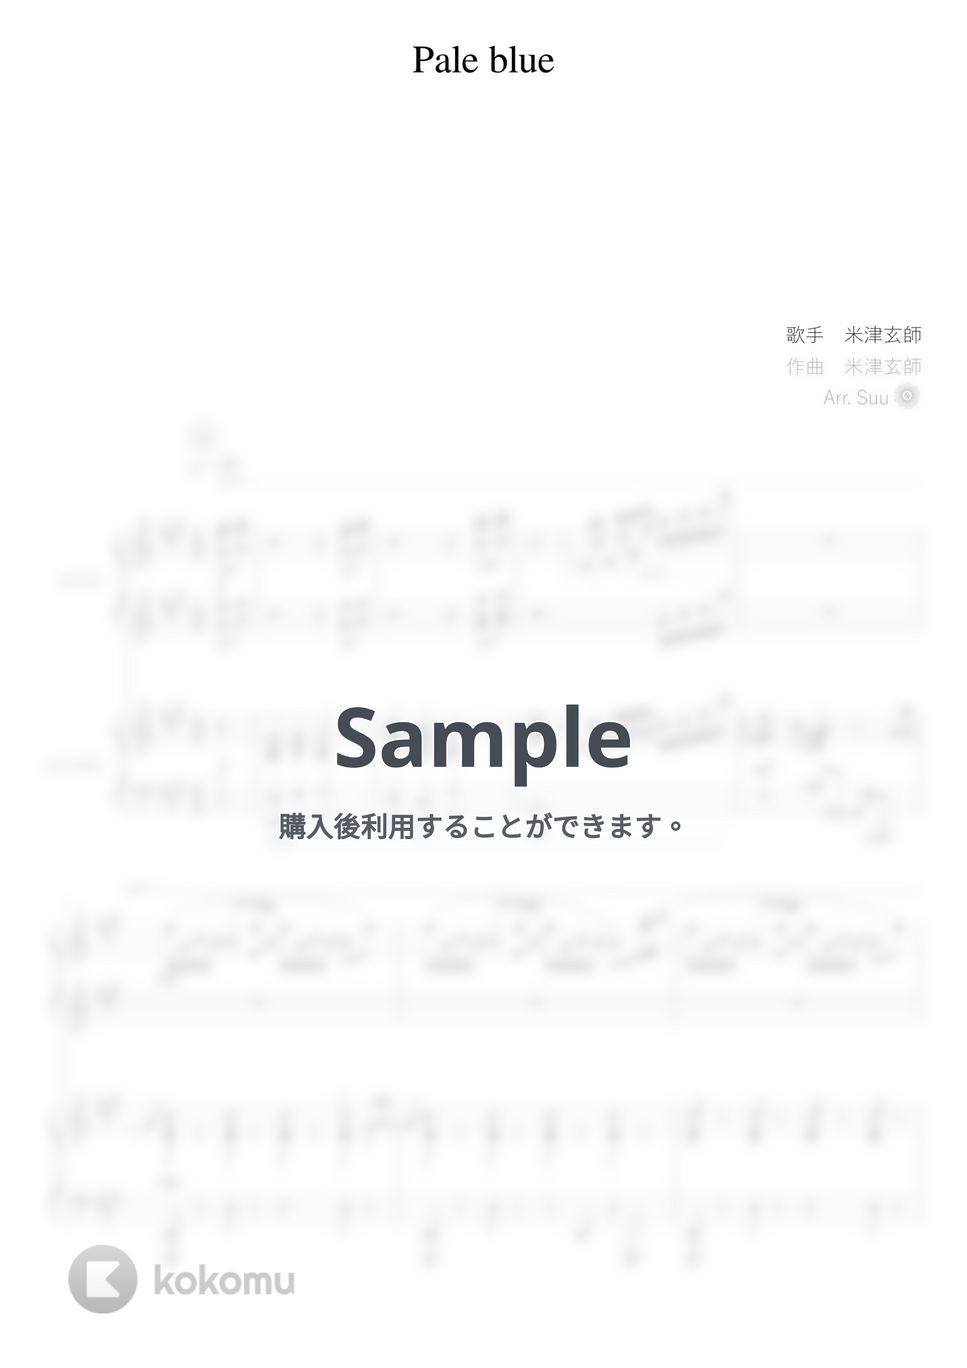 米津玄師 - Pale Blue (ピアノ連弾上級  / TBSテレビドラマ『リコカツ』主題歌) by Suu